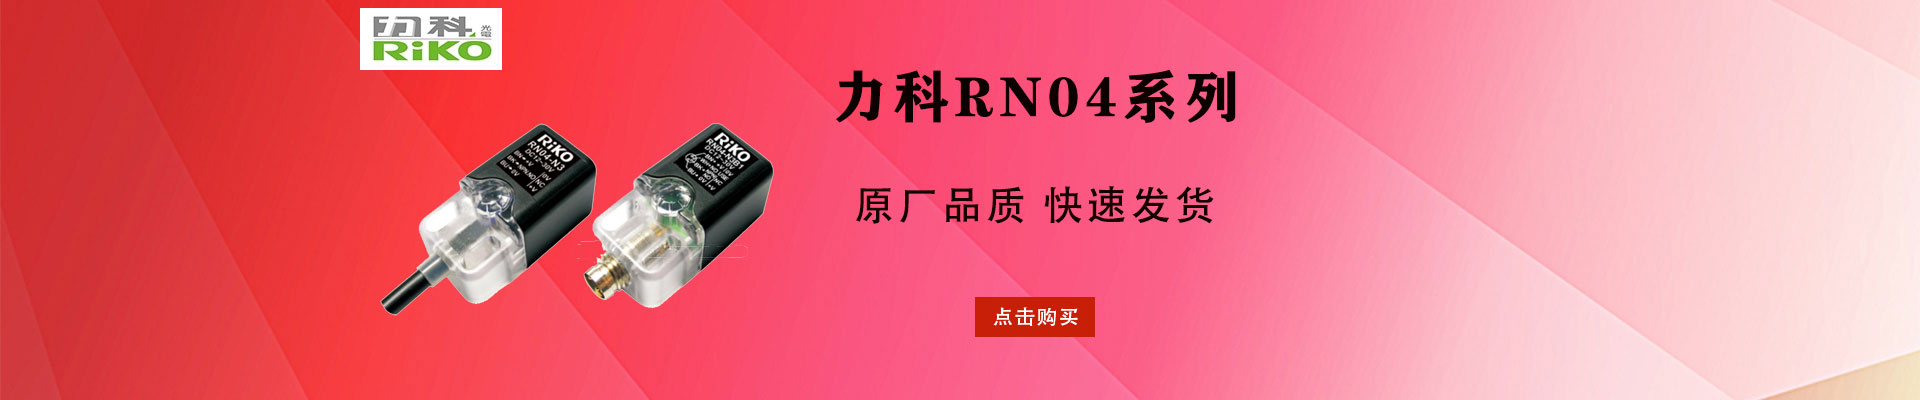 台湾力科RIKO|开关电源设备